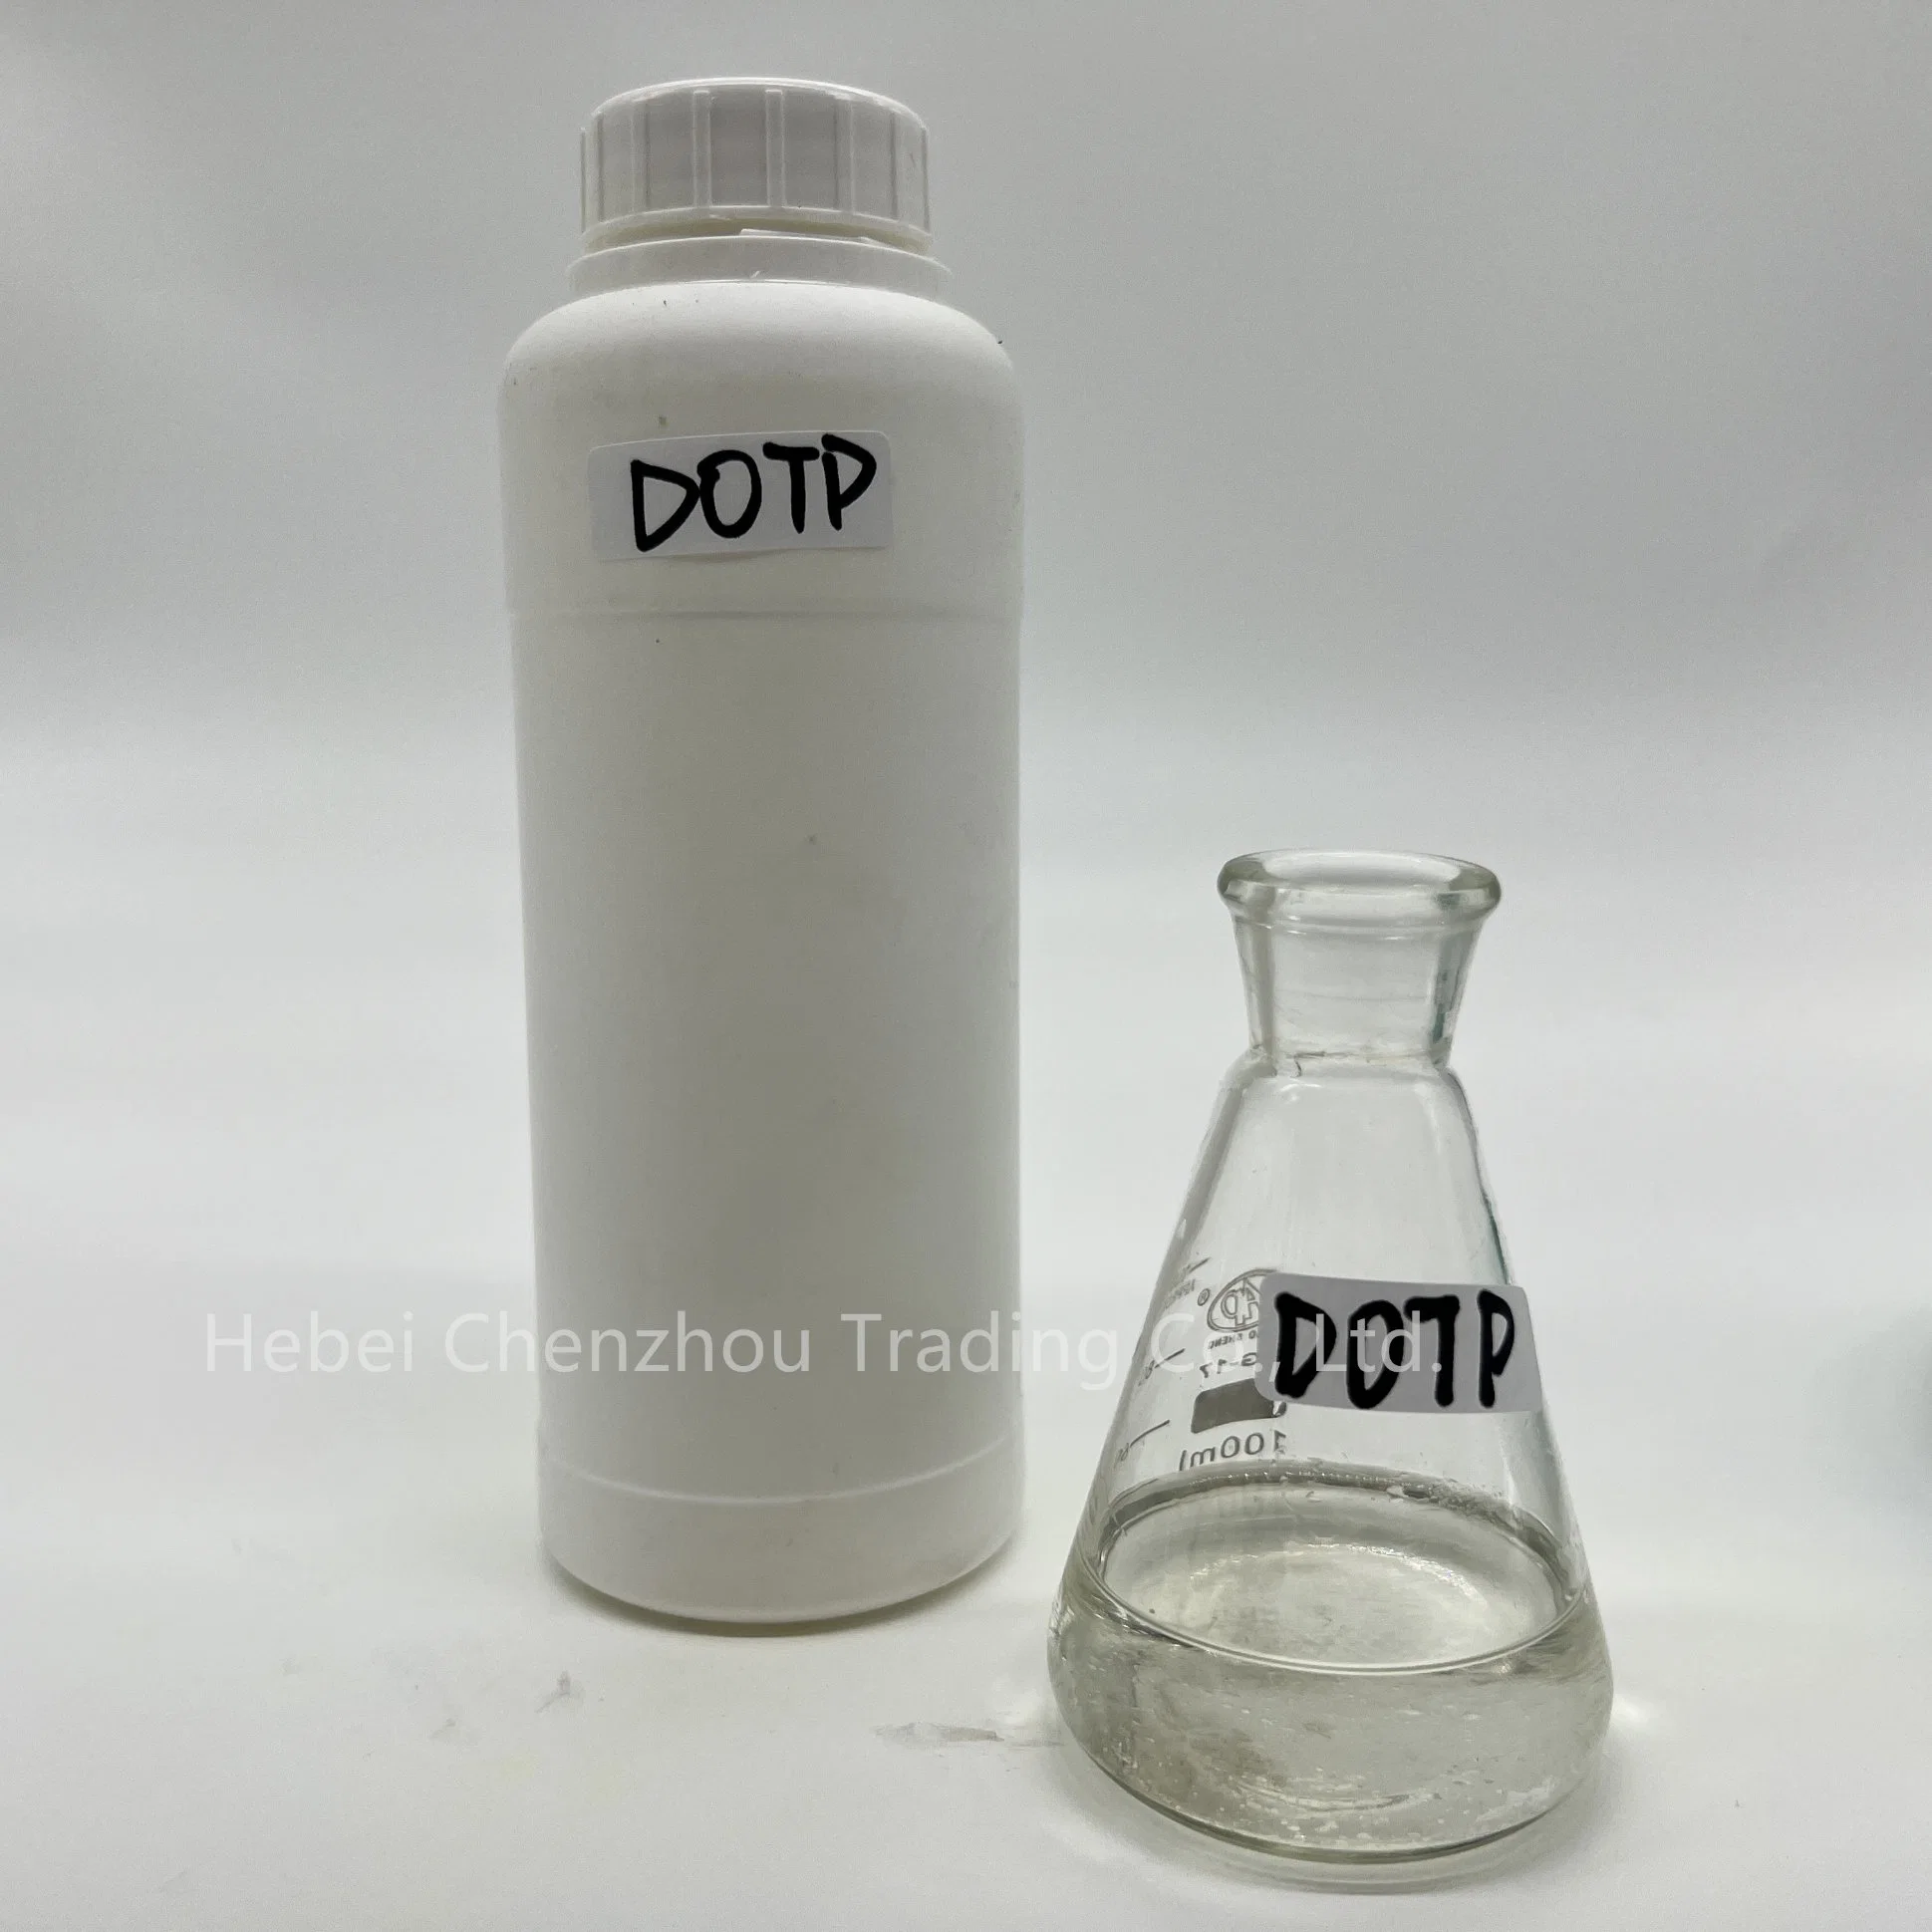 Agente químico auxiliar Dotp con Adhesives piel artificial